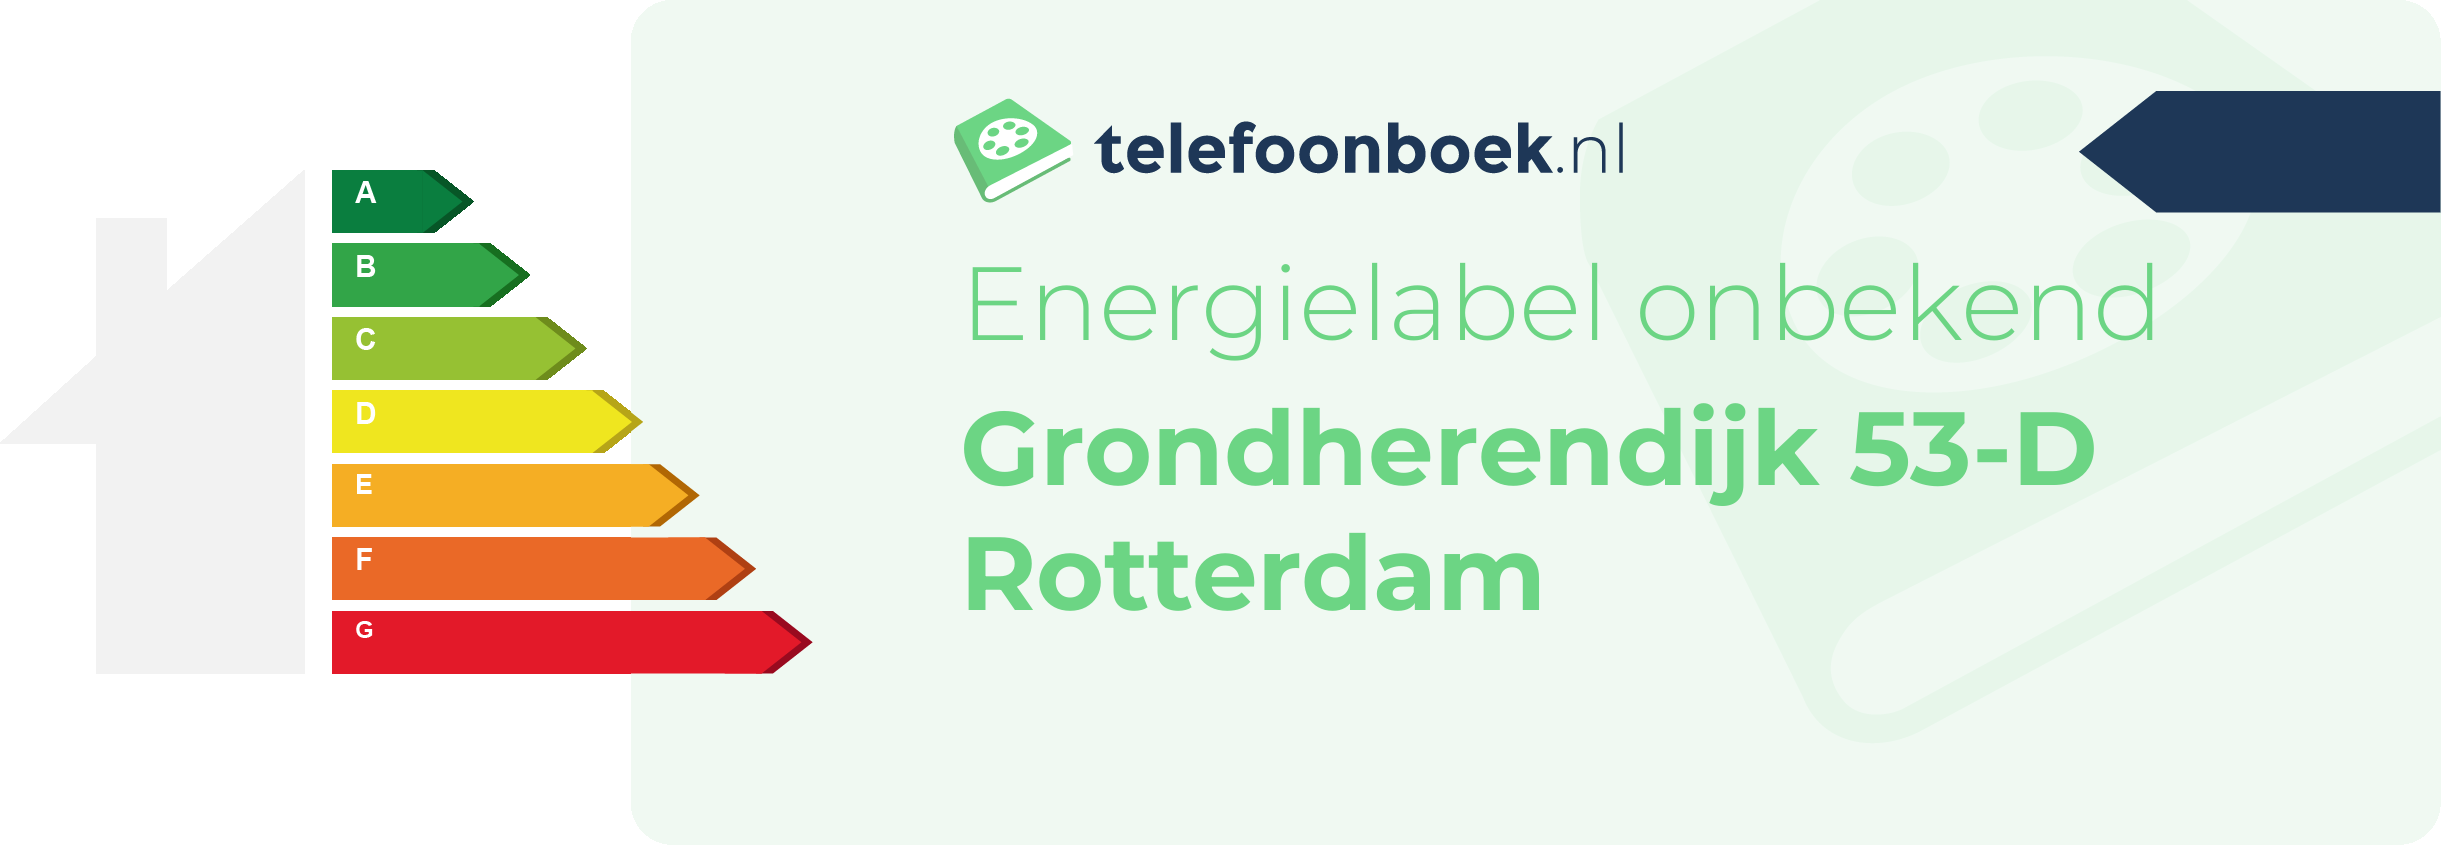 Energielabel Grondherendijk 53-D Rotterdam